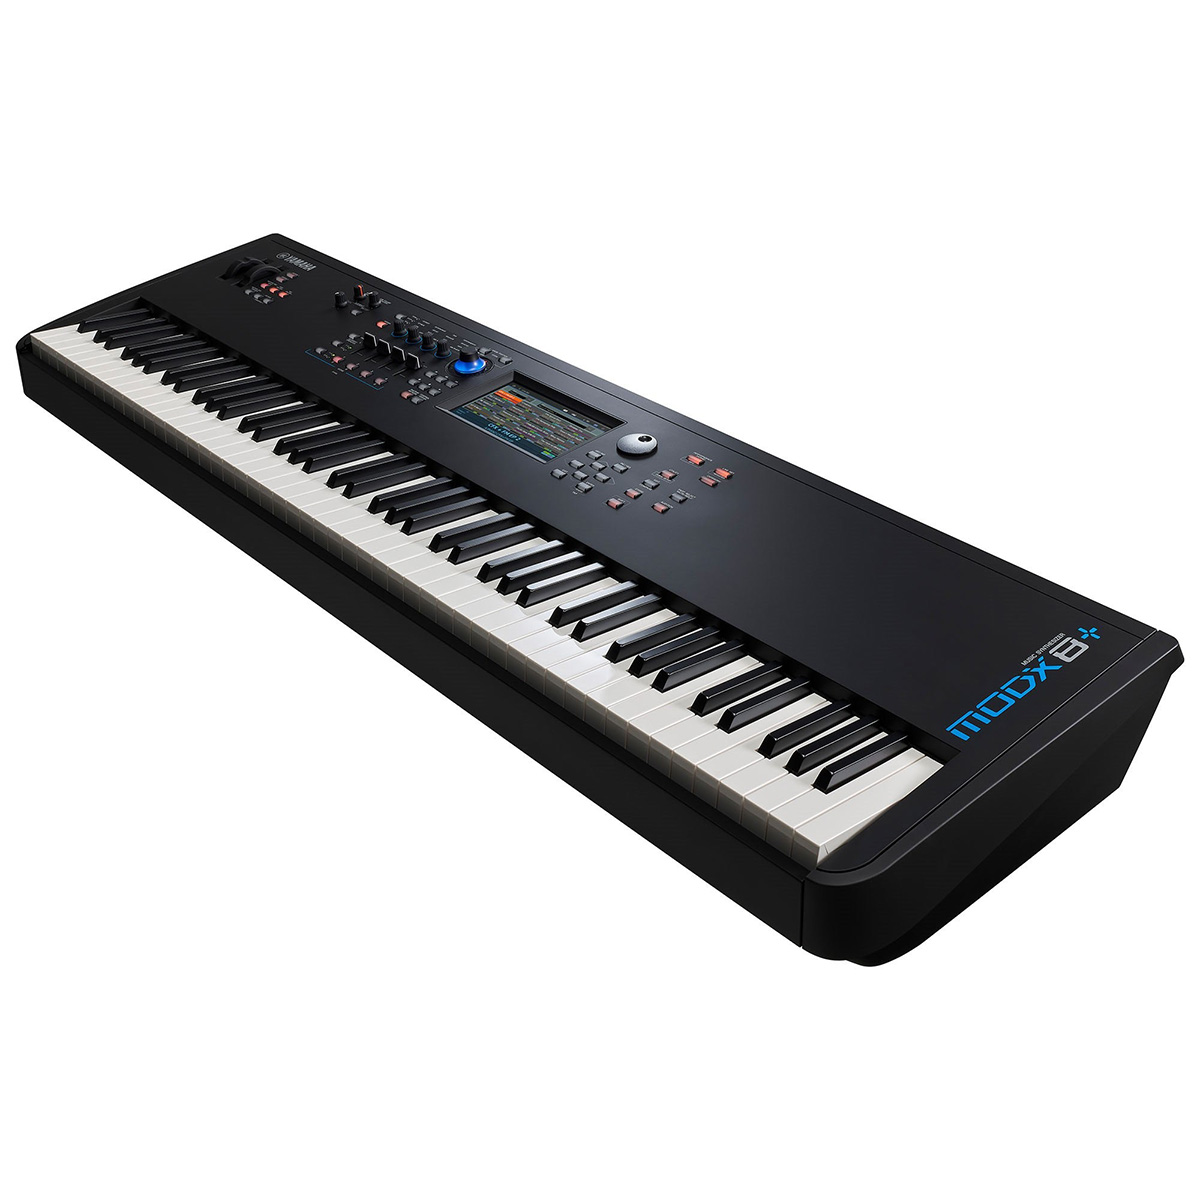 ヤマハキーボード88key スピーカー付き - 鍵盤楽器、ピアノ